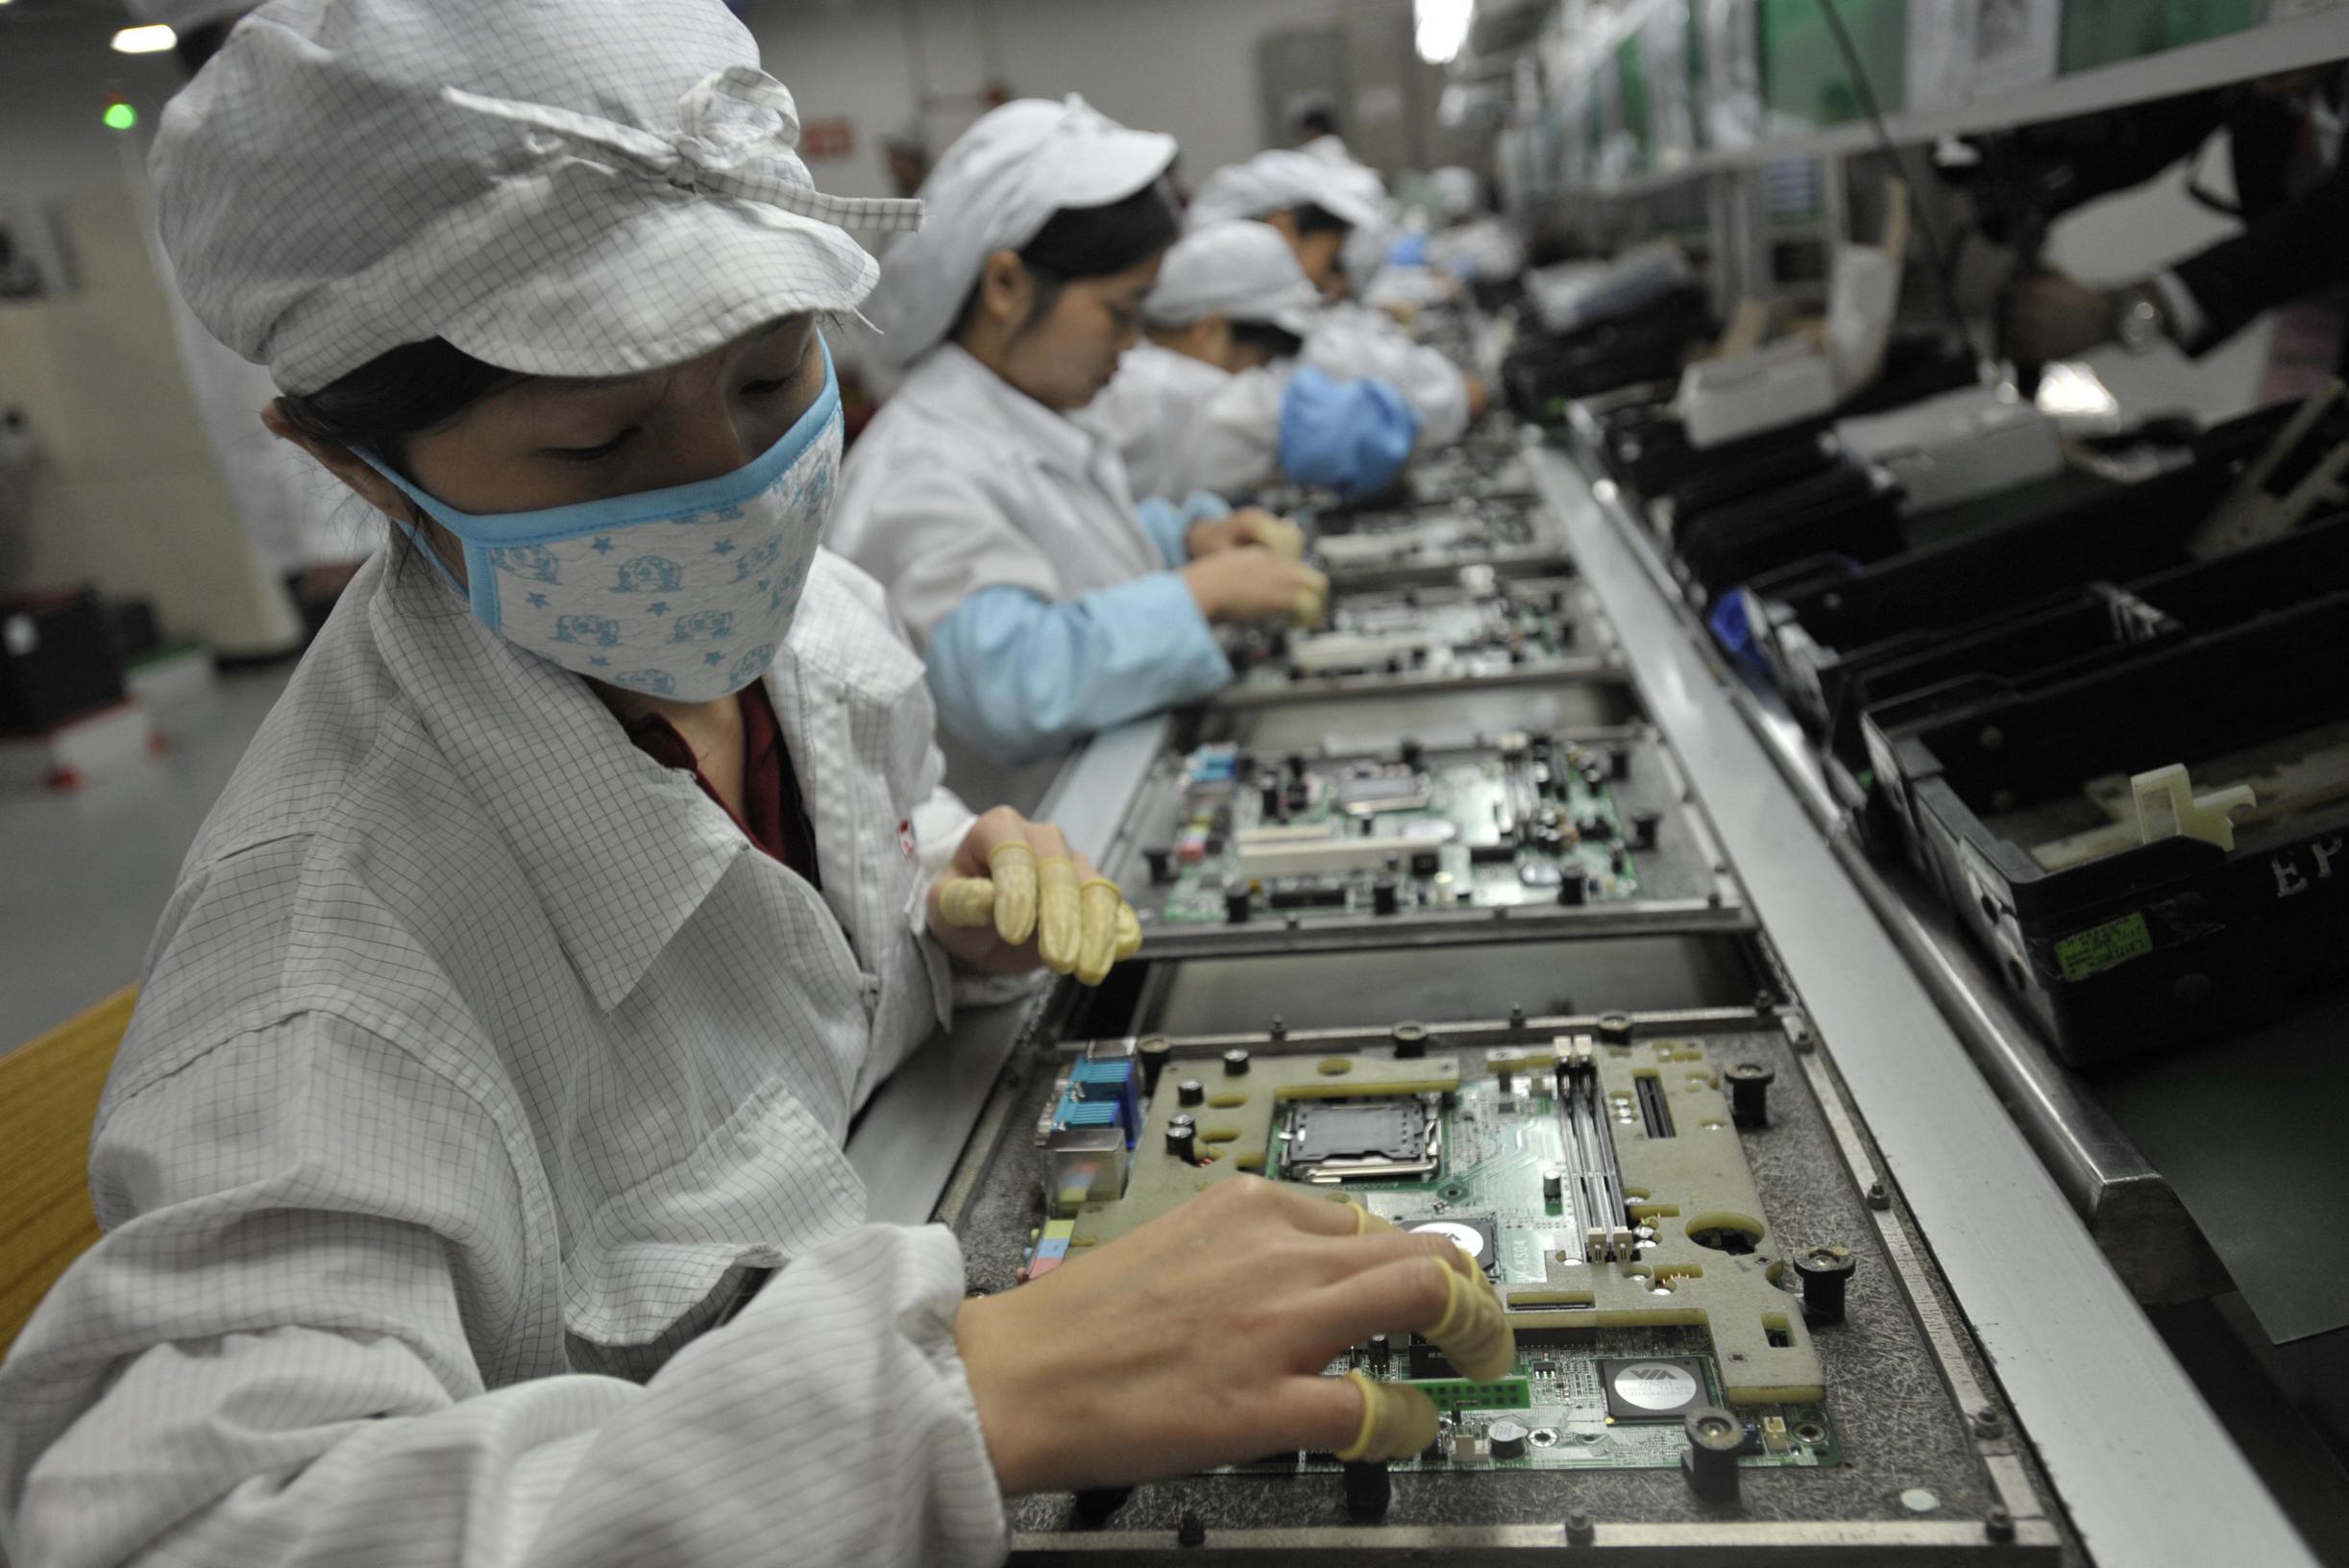 Panico nella più grande fabbrica di iPhone del mondo: i lavoratori cercano di fuggire dopo le voci di morti